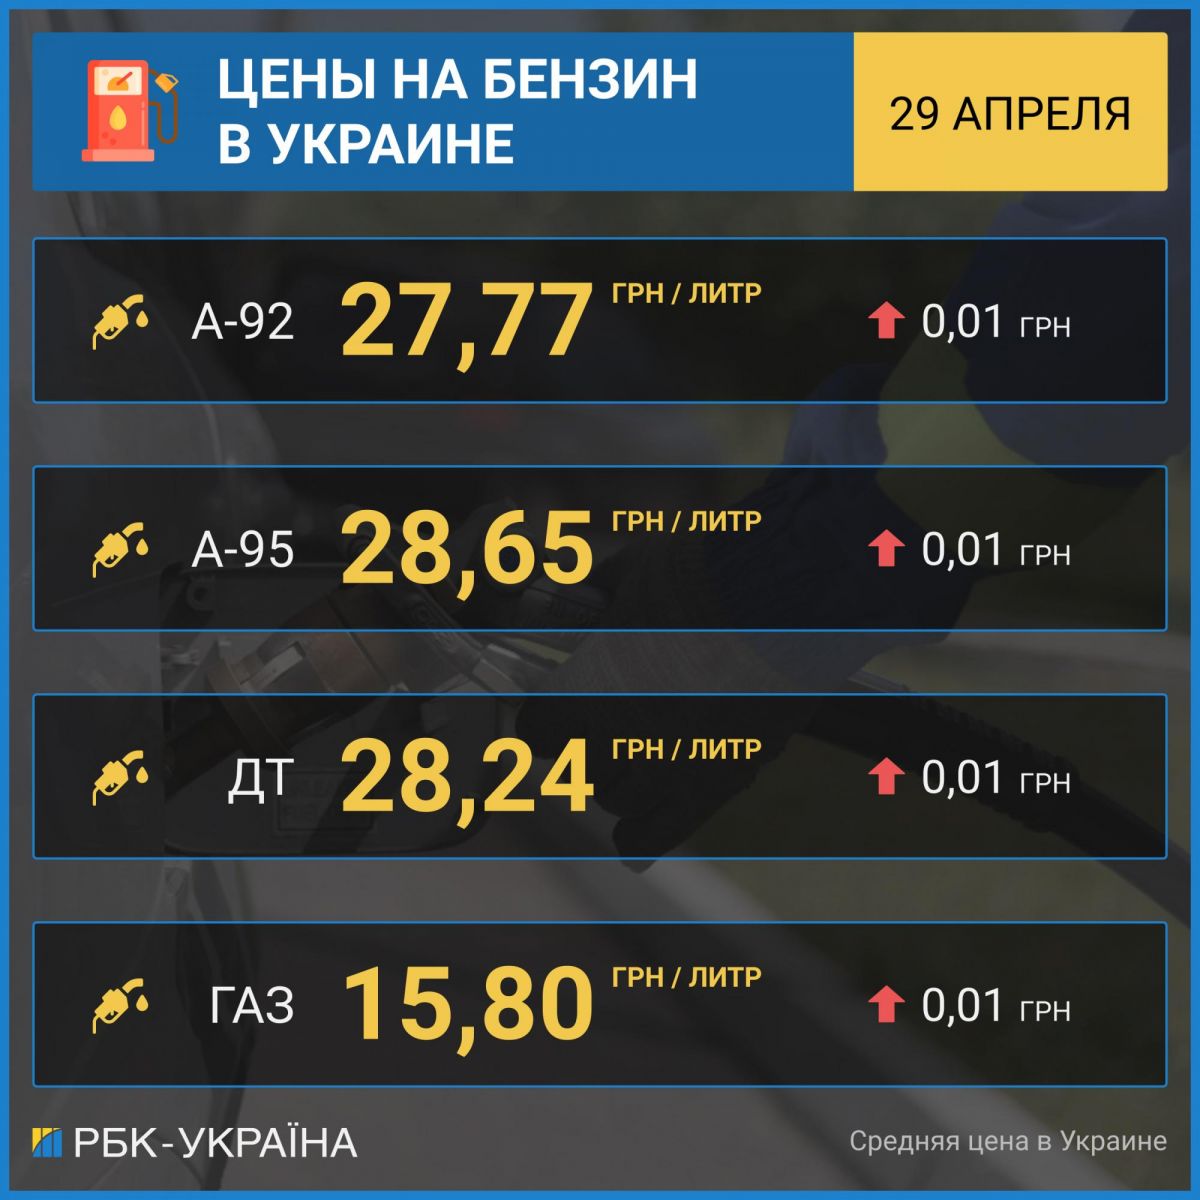 Розничные цены на бензин А-95 на АЗС в Украине. Таблица: РБК-Украина